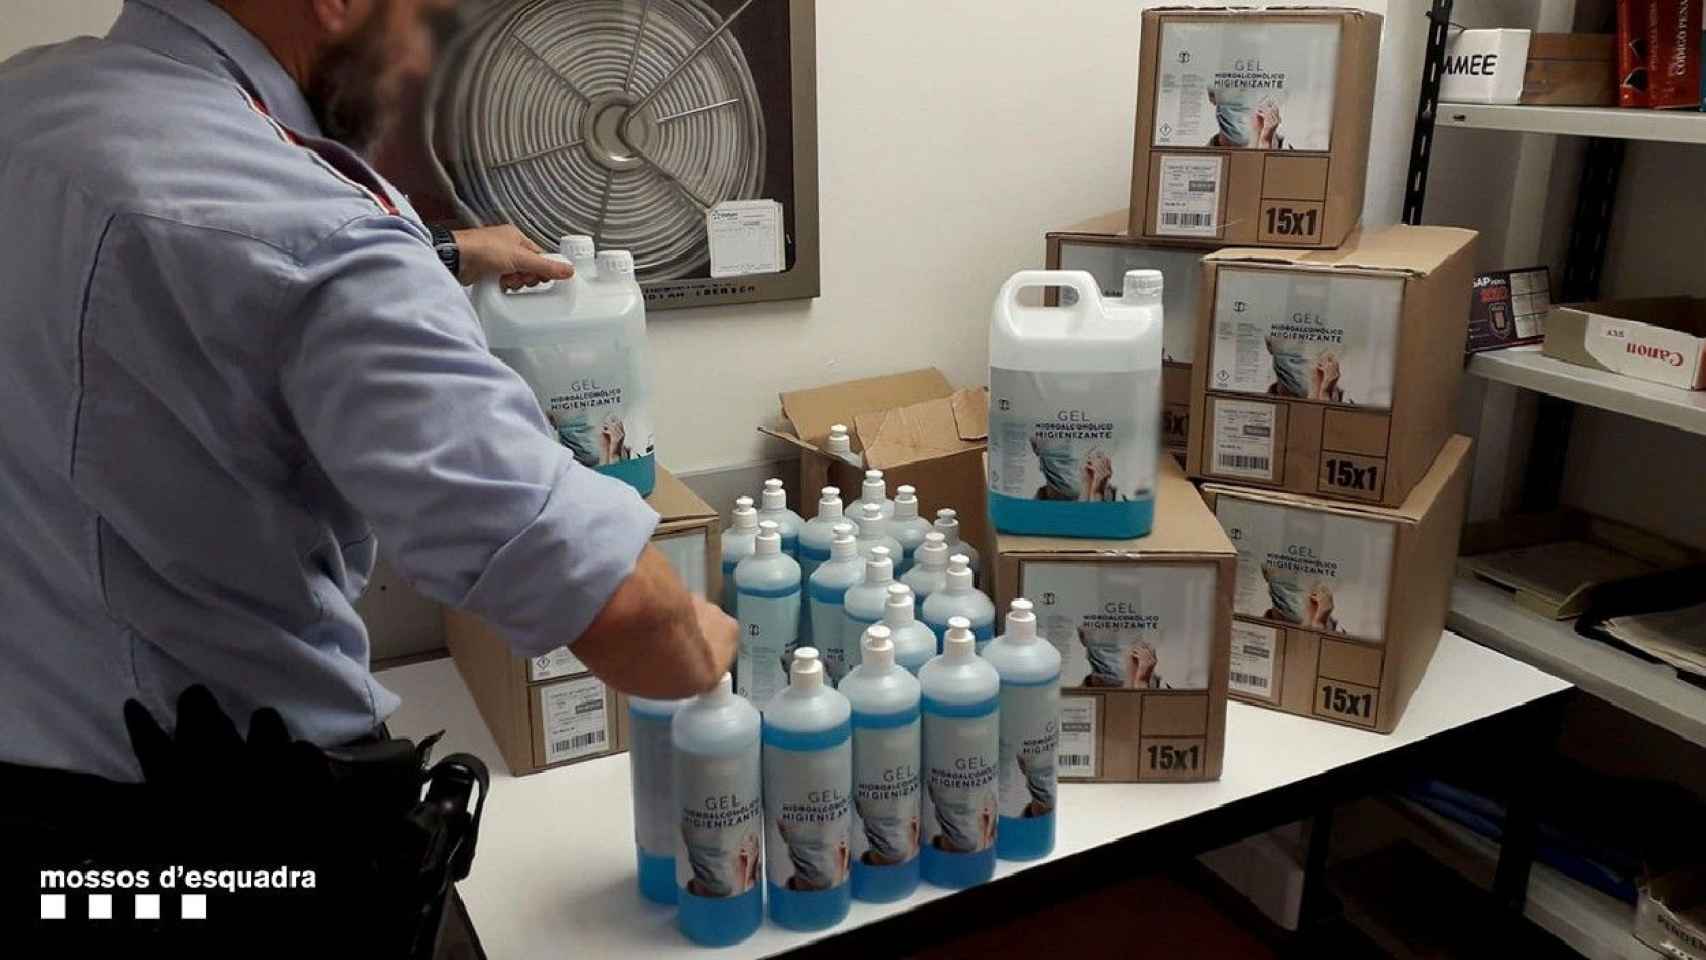 Botellas de gel hidroalcohólico falso / MOSSOS D'ESQUADRA